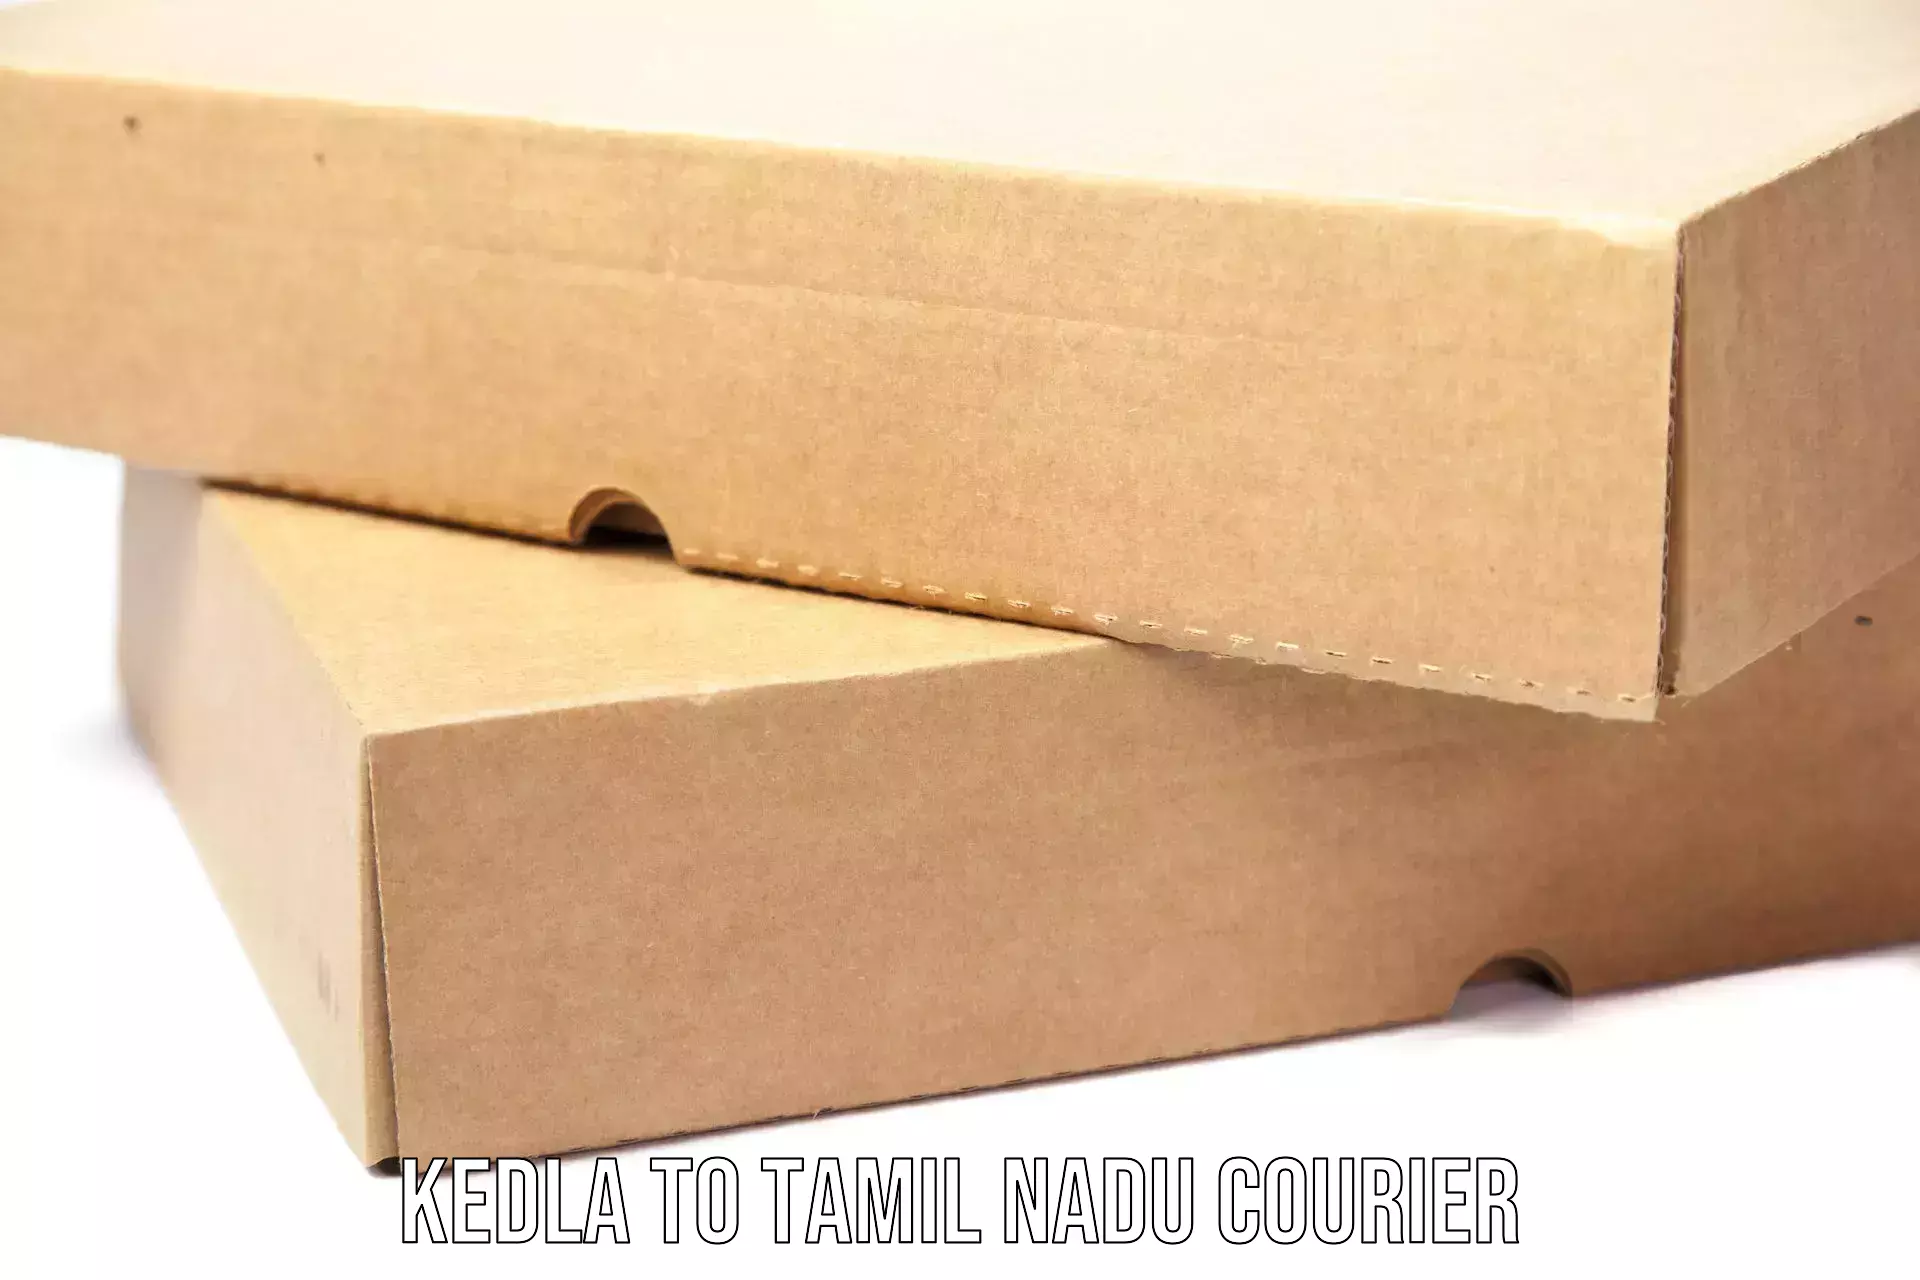 Multi-service courier options Kedla to Ponnamaravathi